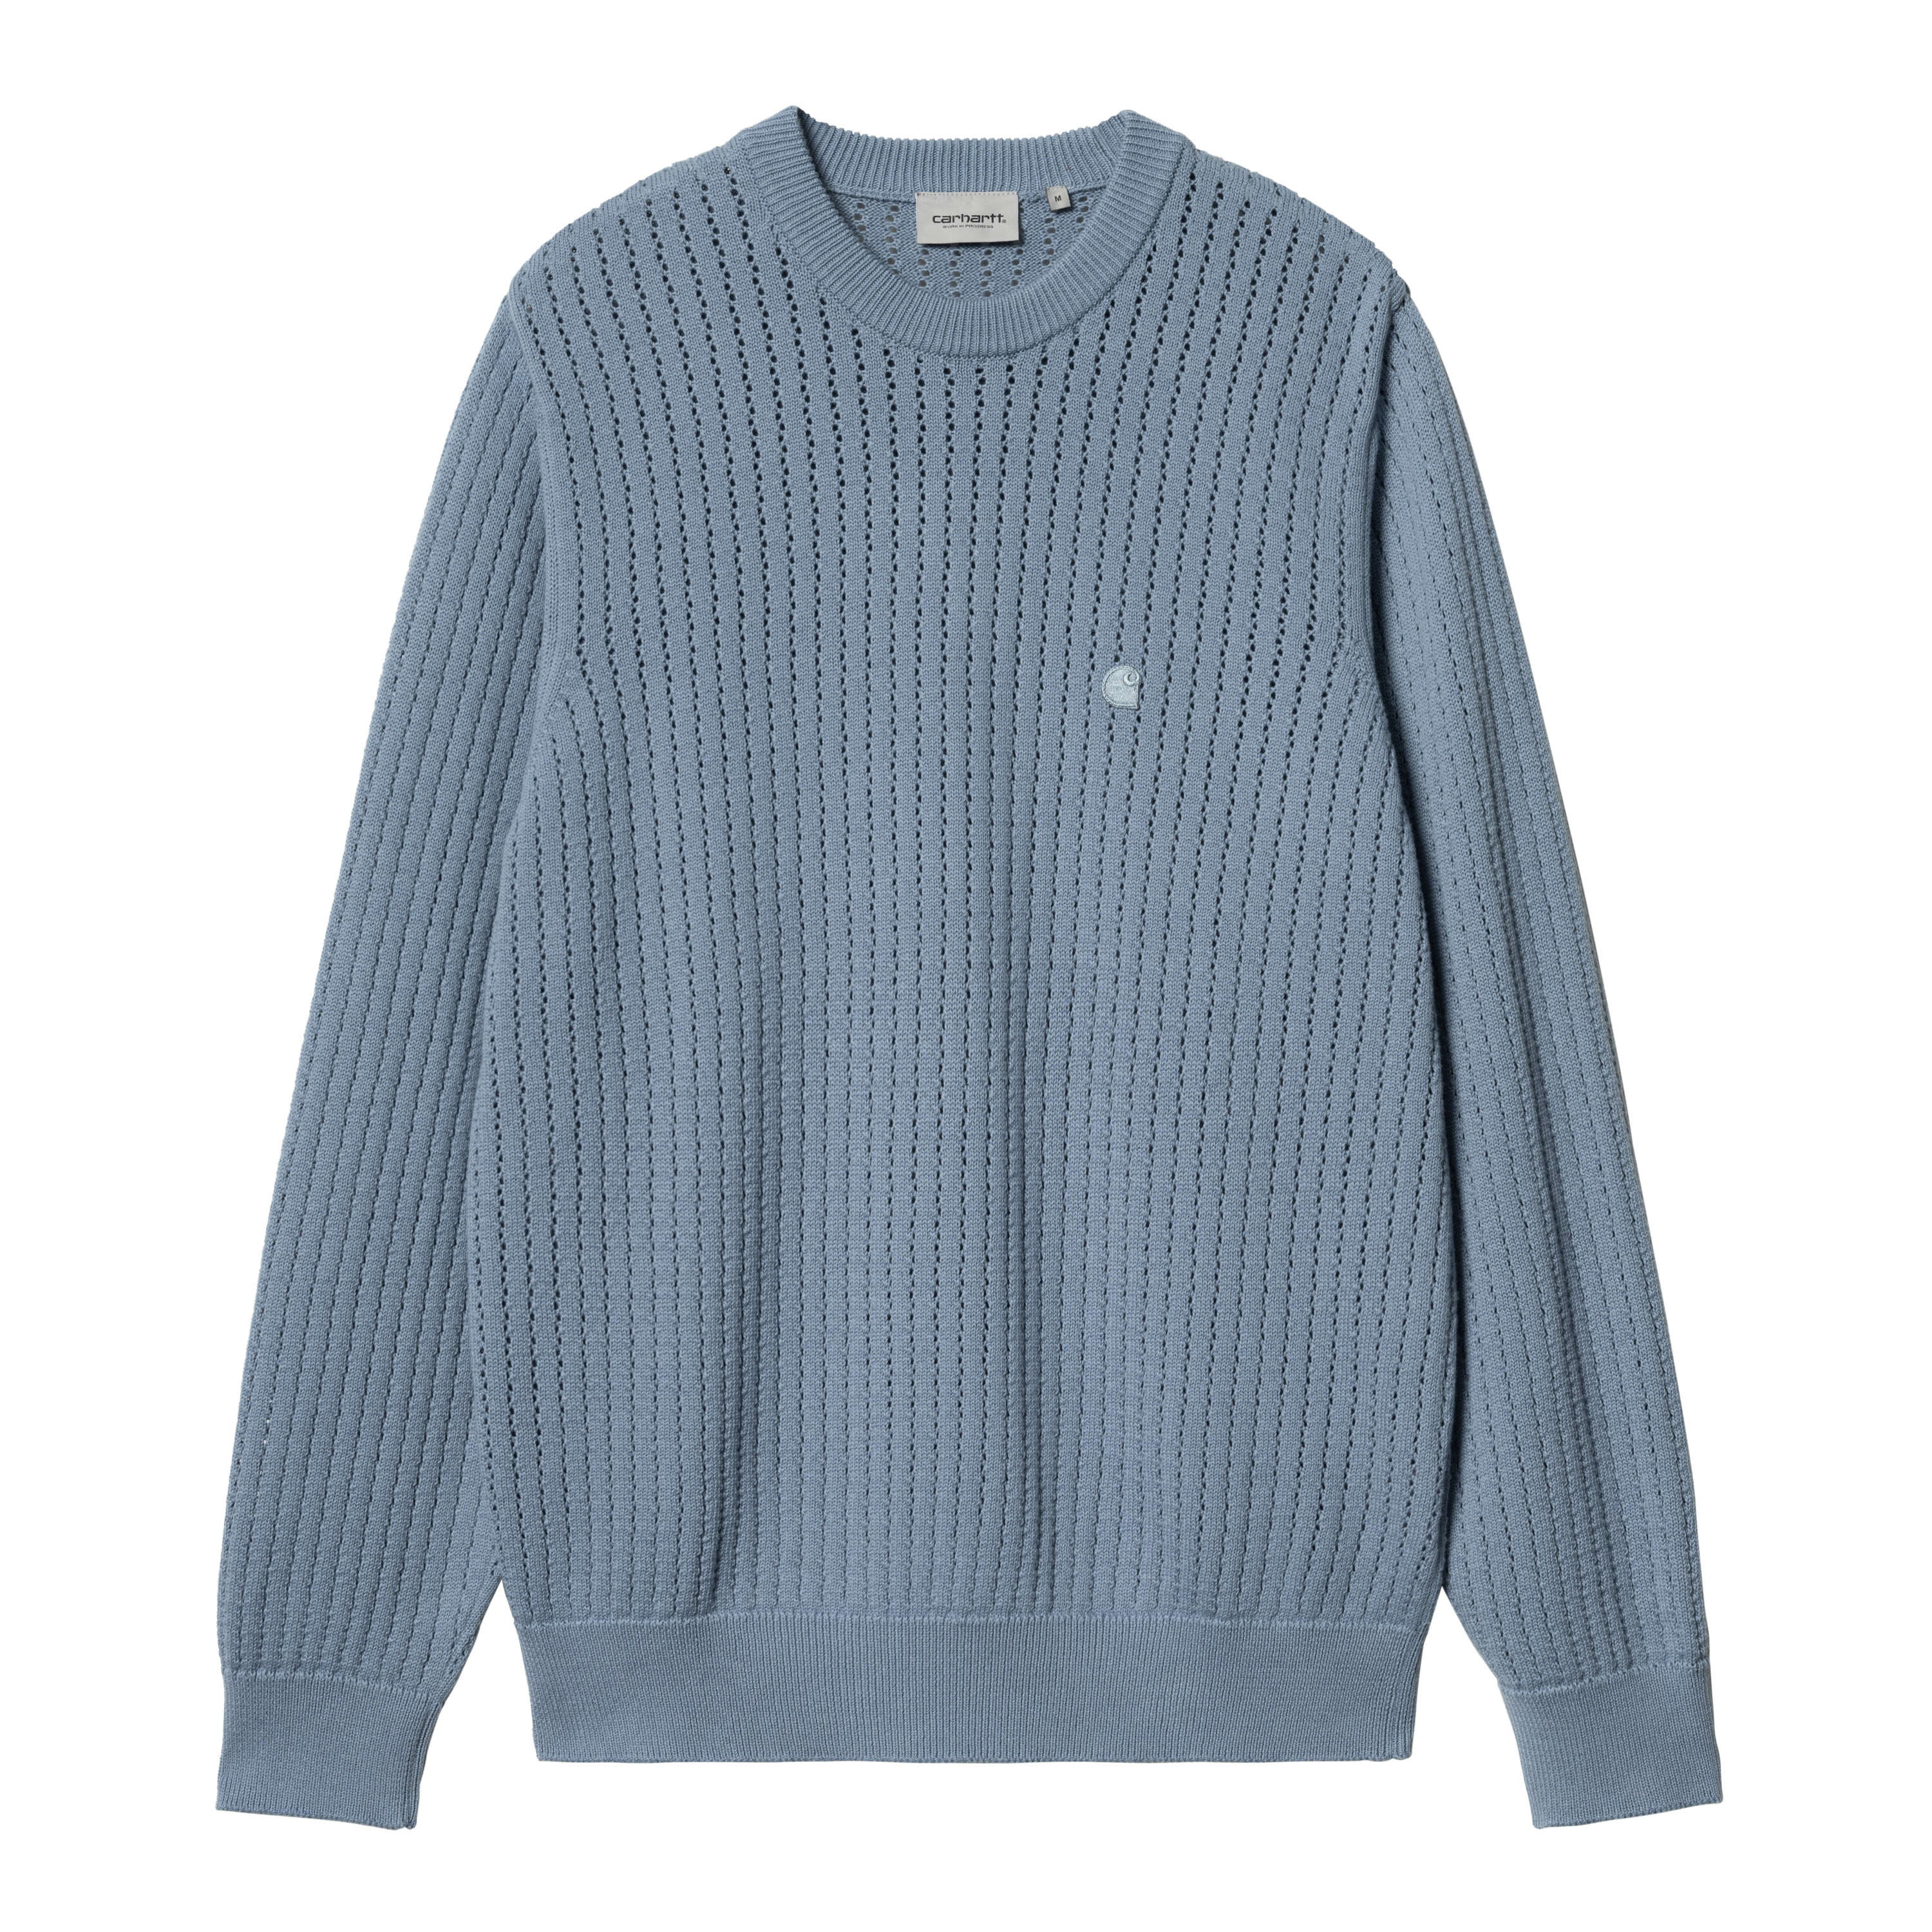 Carhartt WIP Calen Sweater in Blu